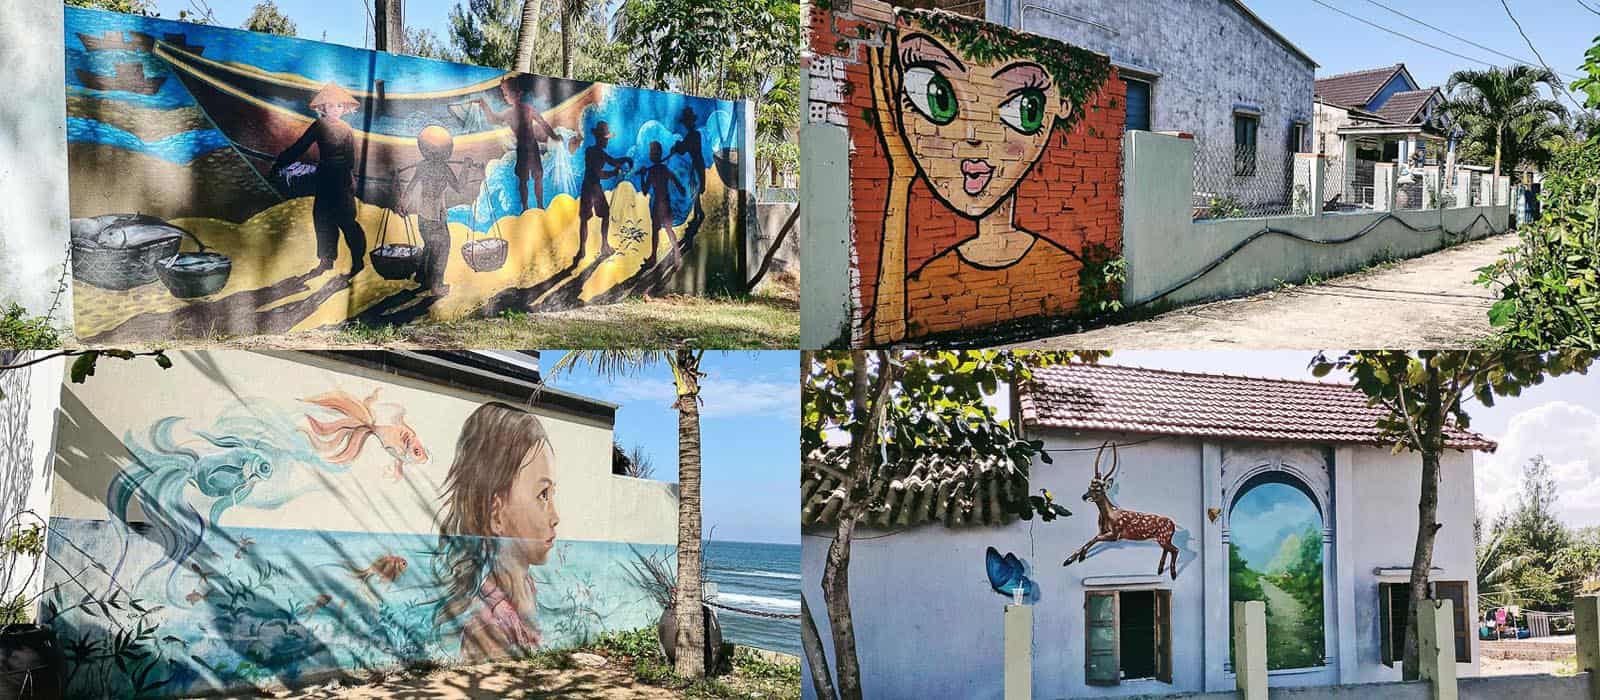 Ngôi làng cổ tích với những bức tranh sắc màu tái hiện cuộc sống gần gũi